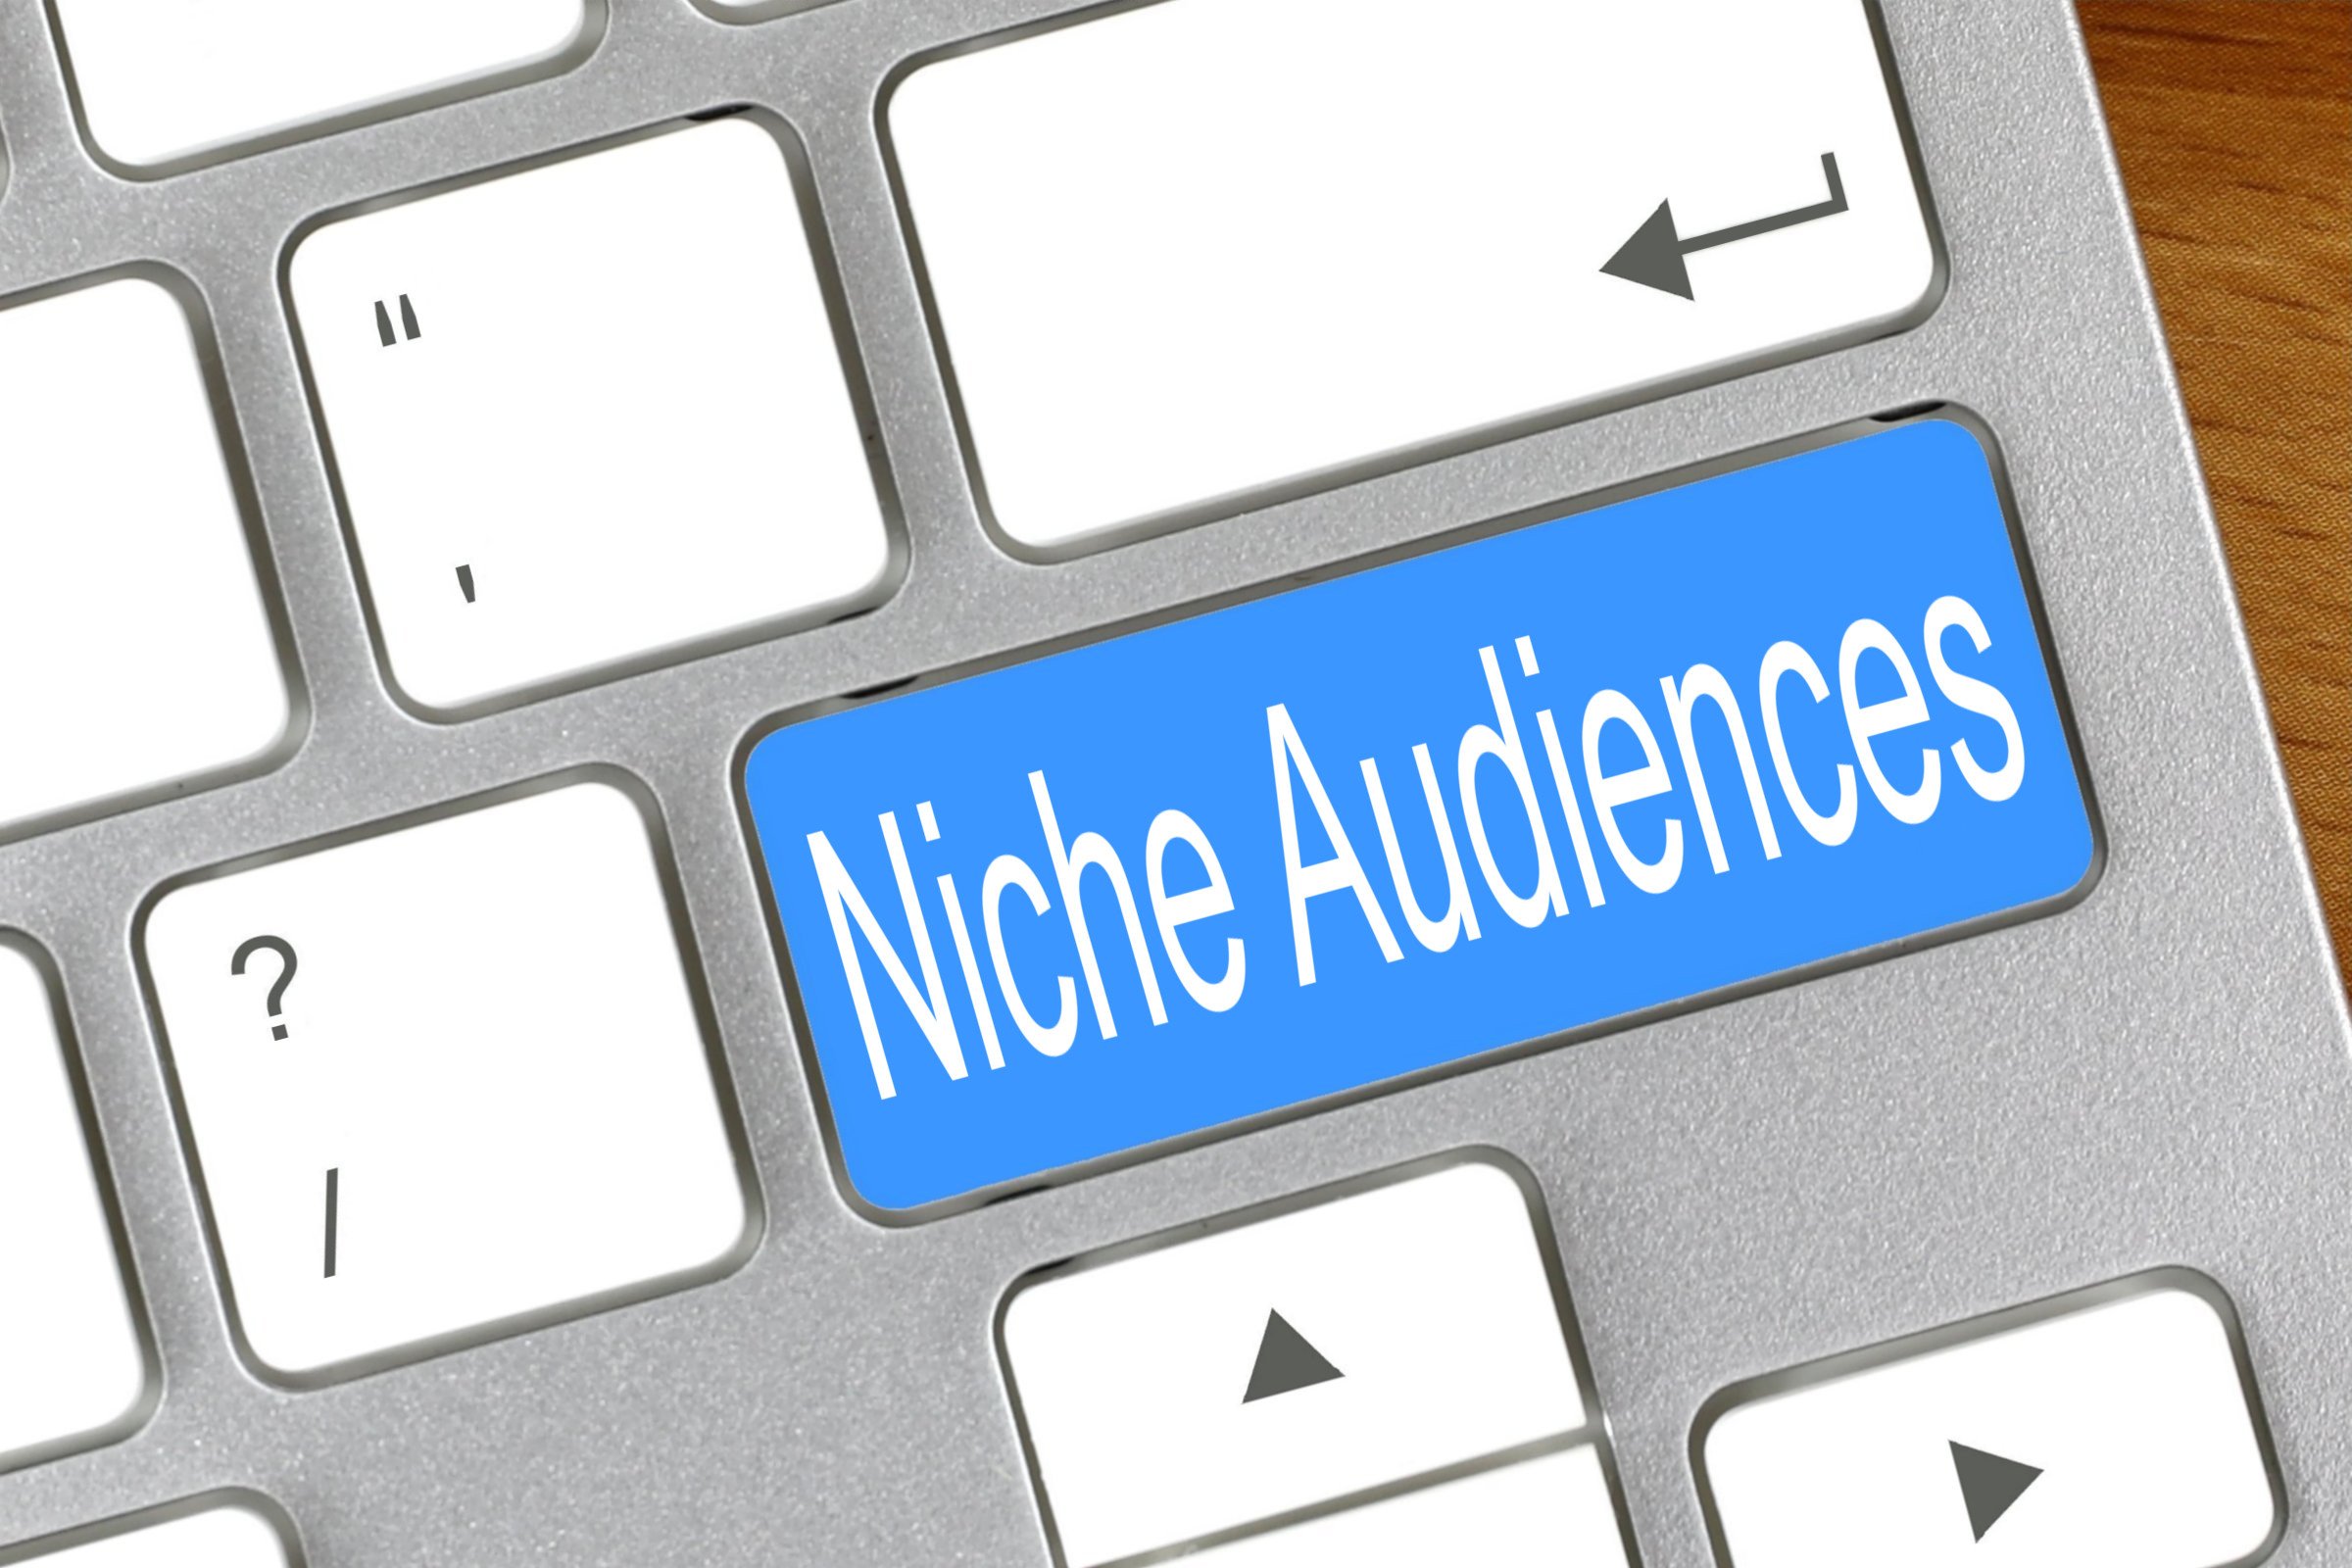 niche audiences